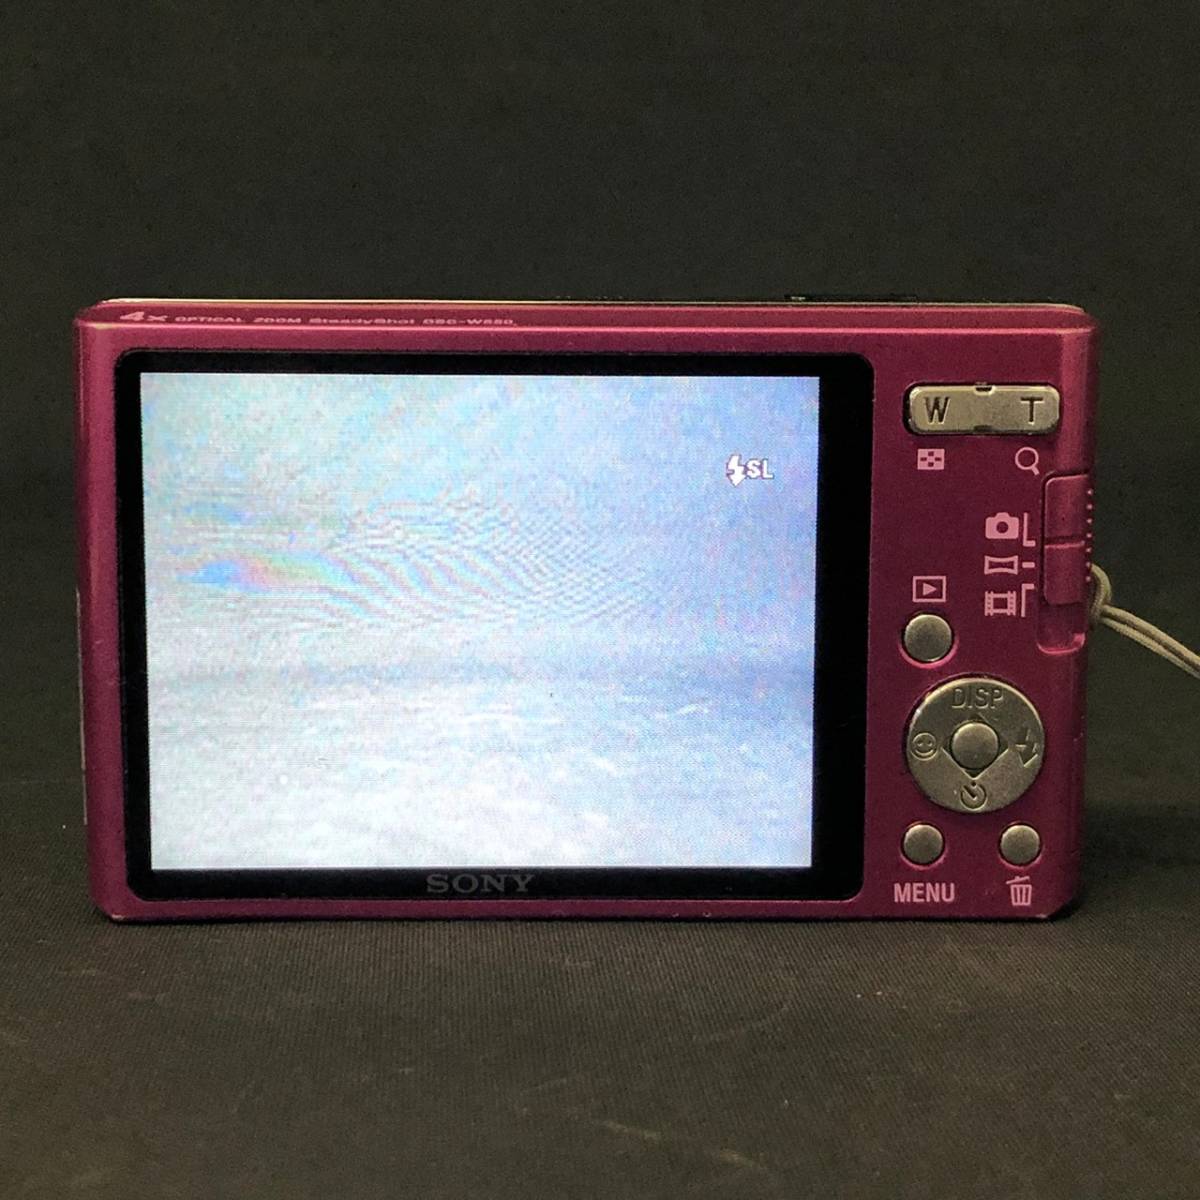 BAm134I 60 SONY DSC-W550 Cyber-shot サイバーショット デジタルカメラ ピンク SDカード8GB 説明書付き 充電器 ケース_画像4